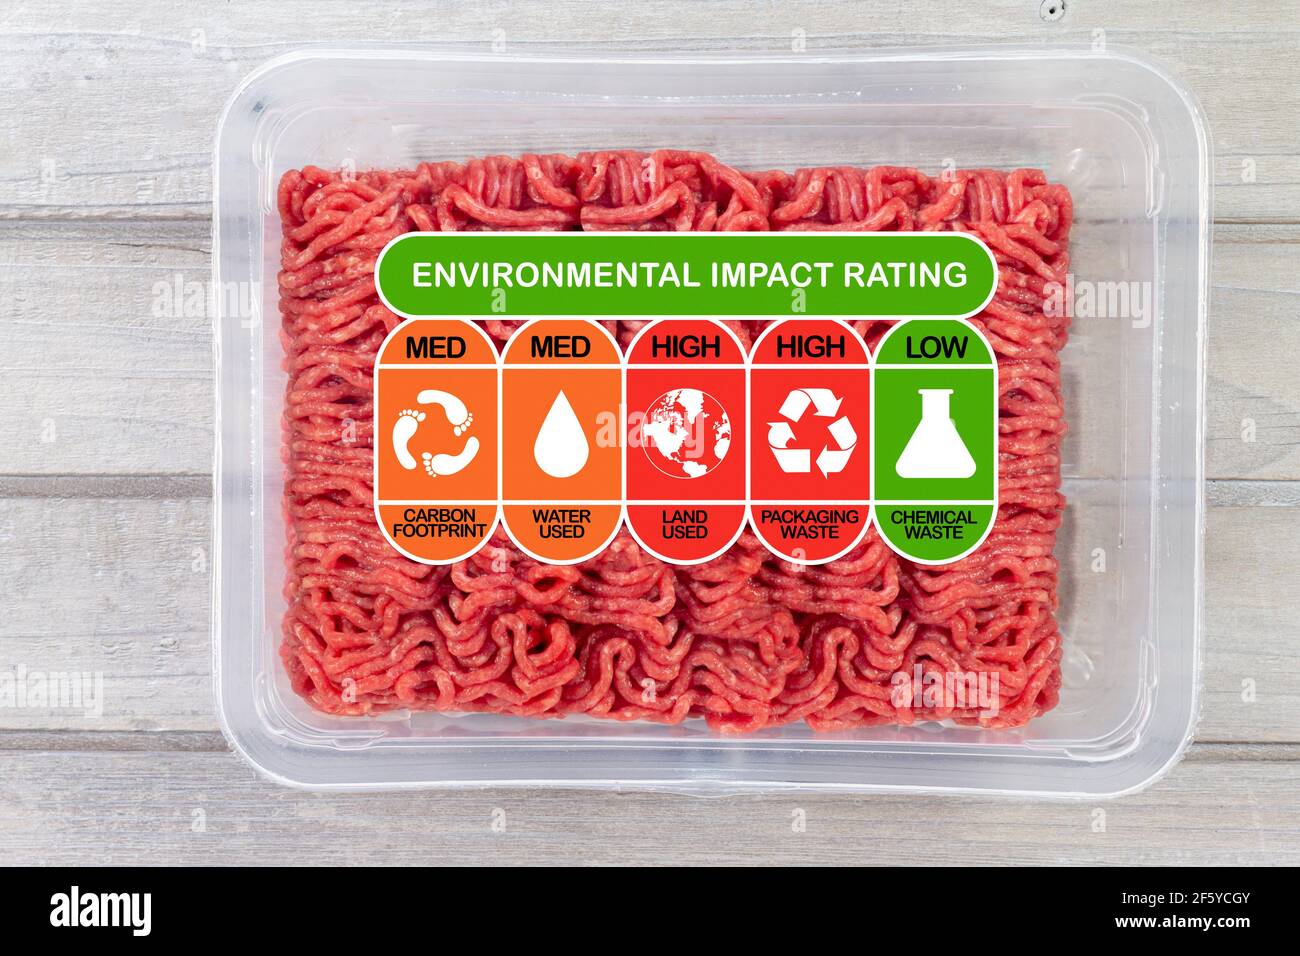 Valutazione dell'impatto ambientale su confezioni di carne con valori nominali alti, med e bassi per l'impronta di carbonio degli alimenti, l'uso di acqua, l'uso del territorio, i rifiuti di imballaggio Foto Stock